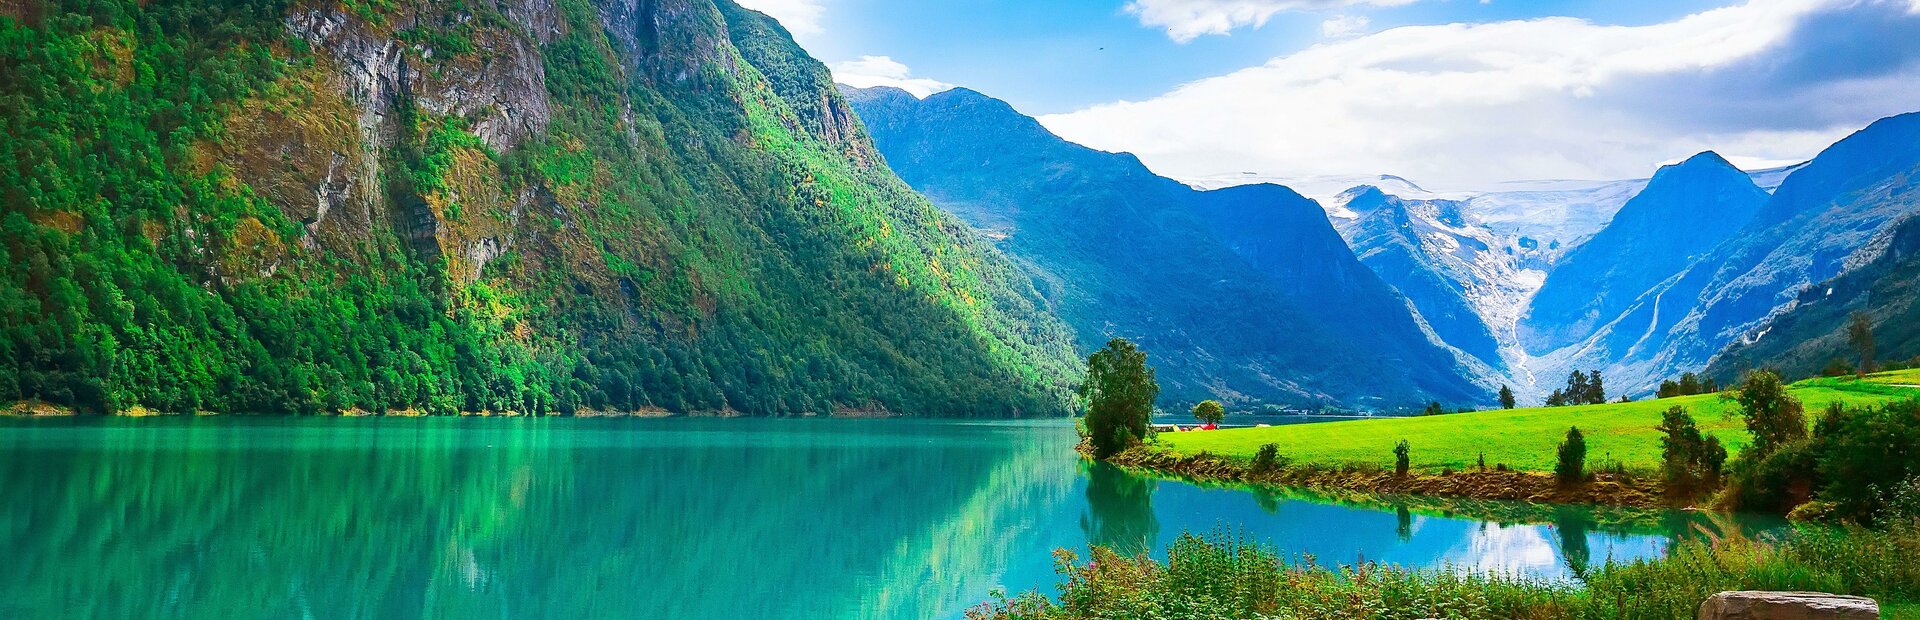 Škandinávia, krajina fjordov a malebných miest. Spoznajte ju počas dovolenky